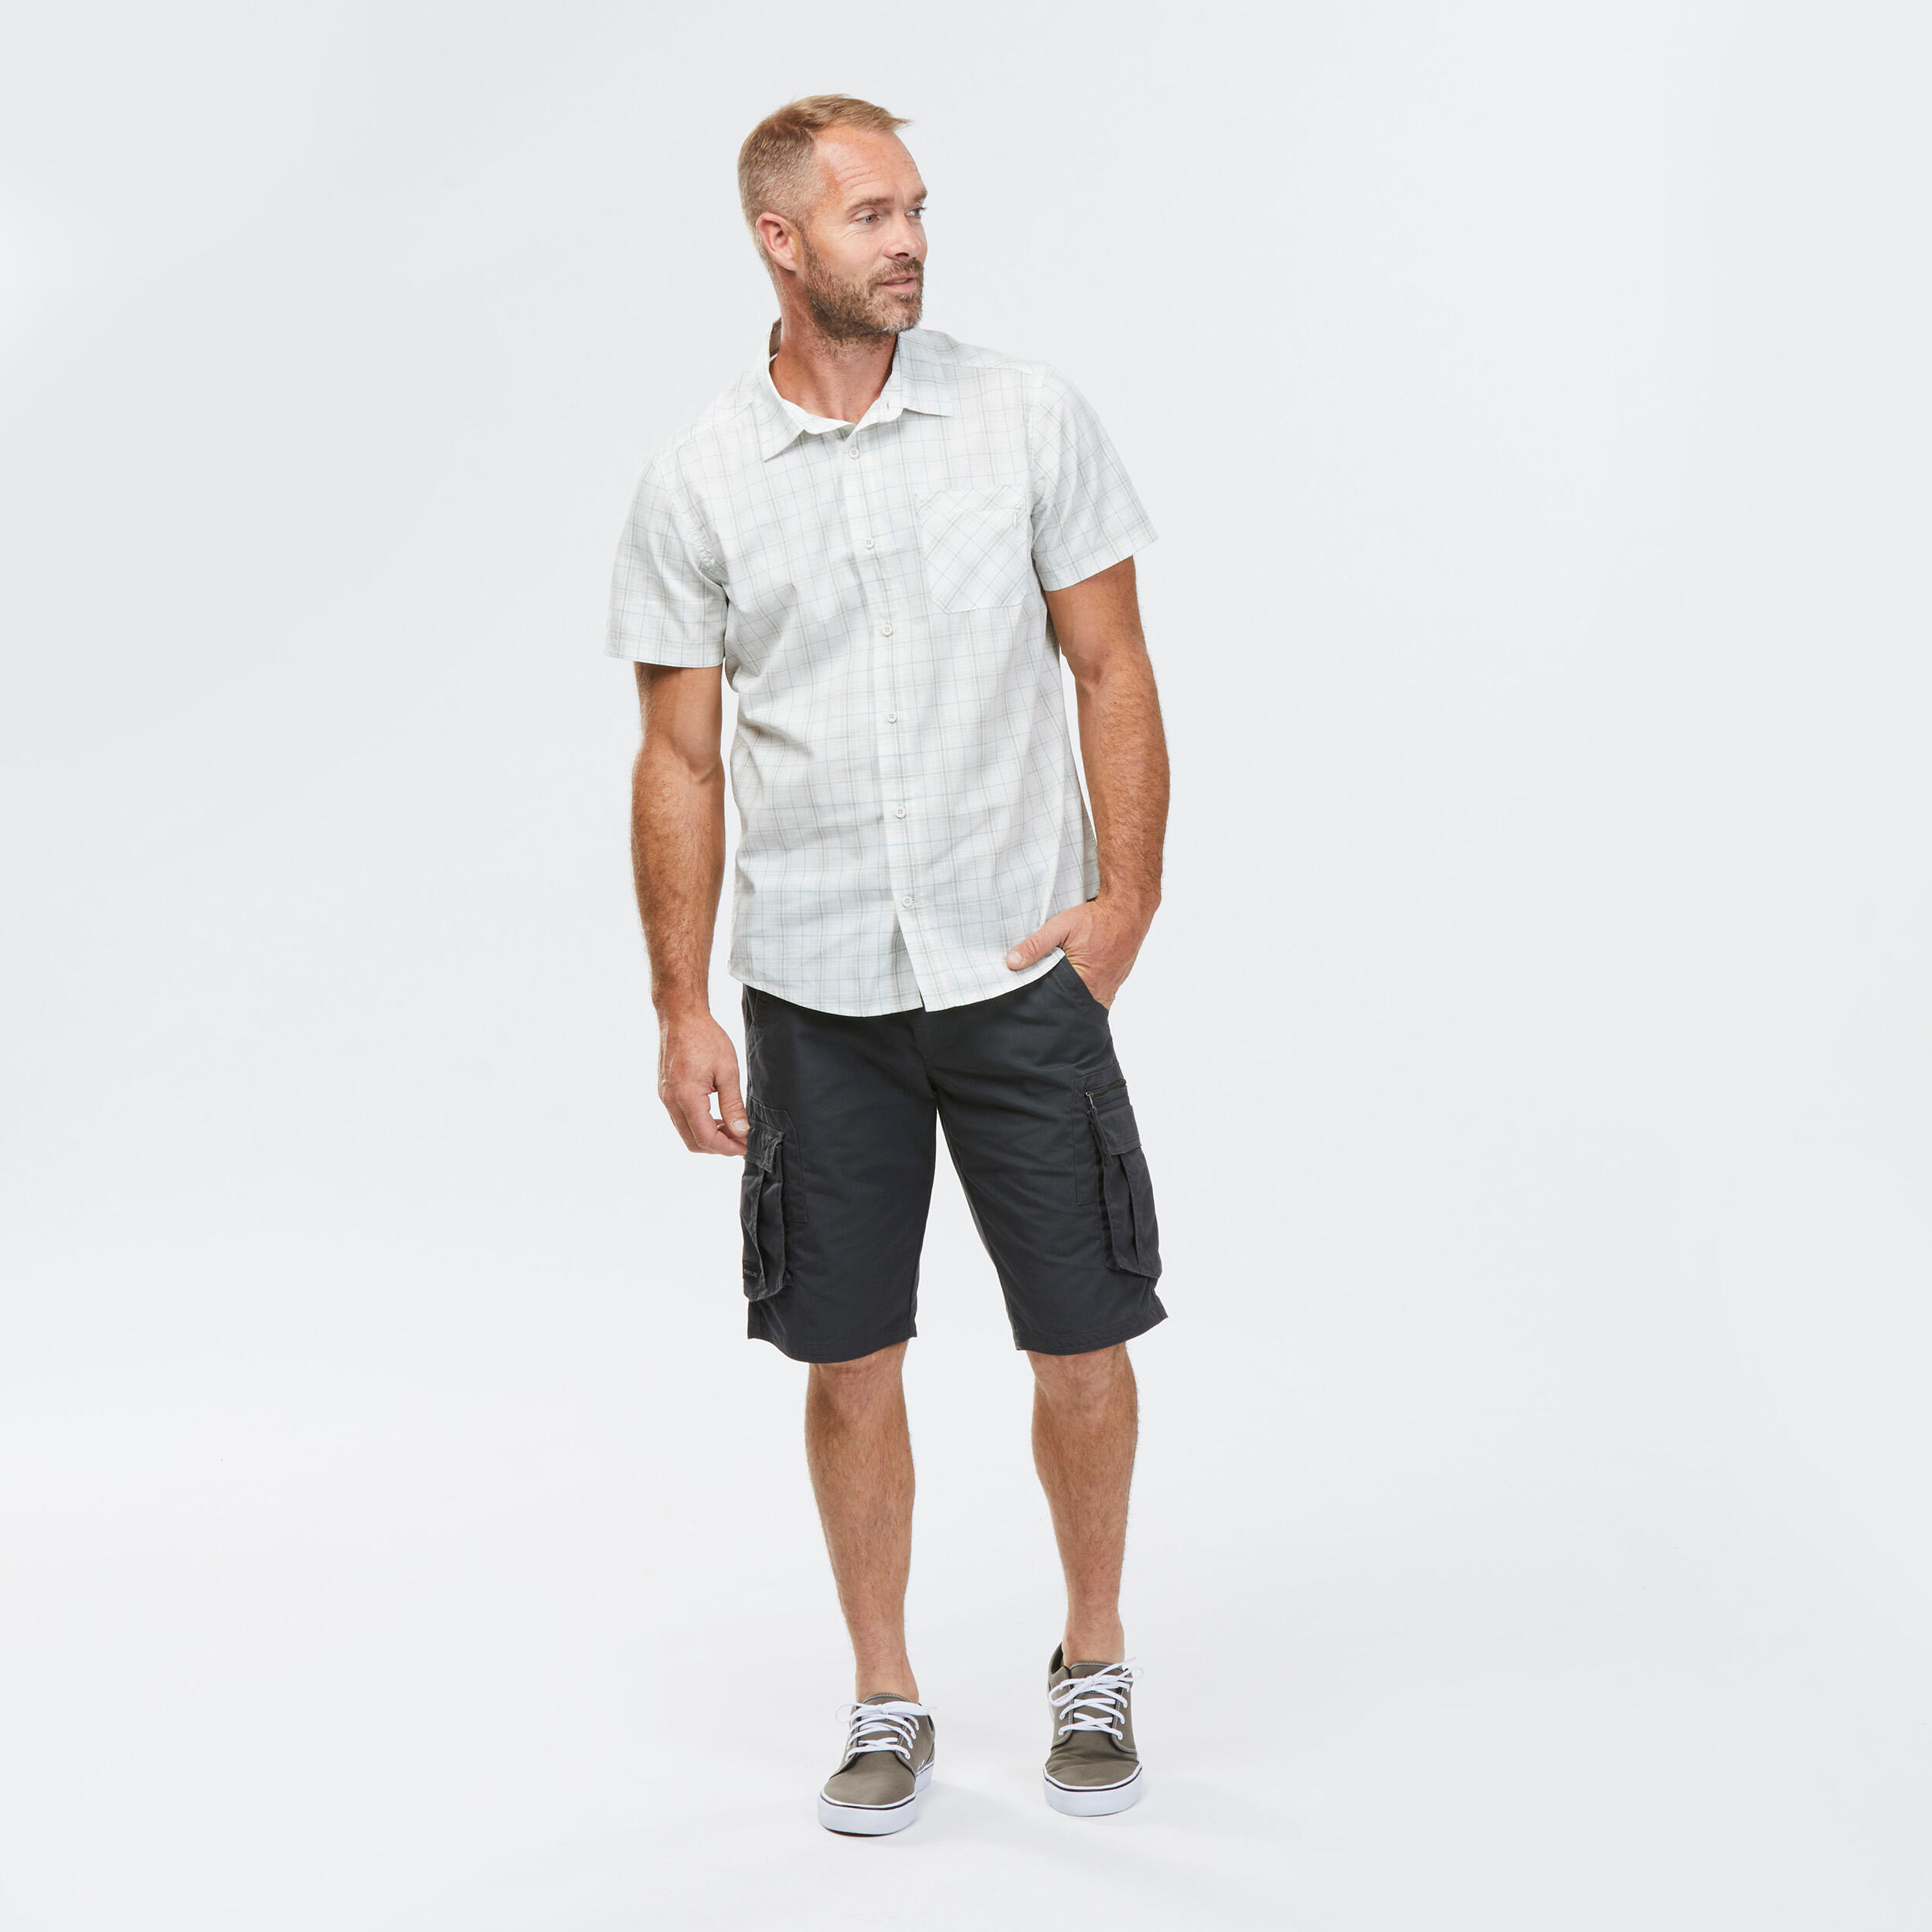 Men’s Short-sleeve Check Travel Trekking Shirt TRAVEL 100 - White  4/6